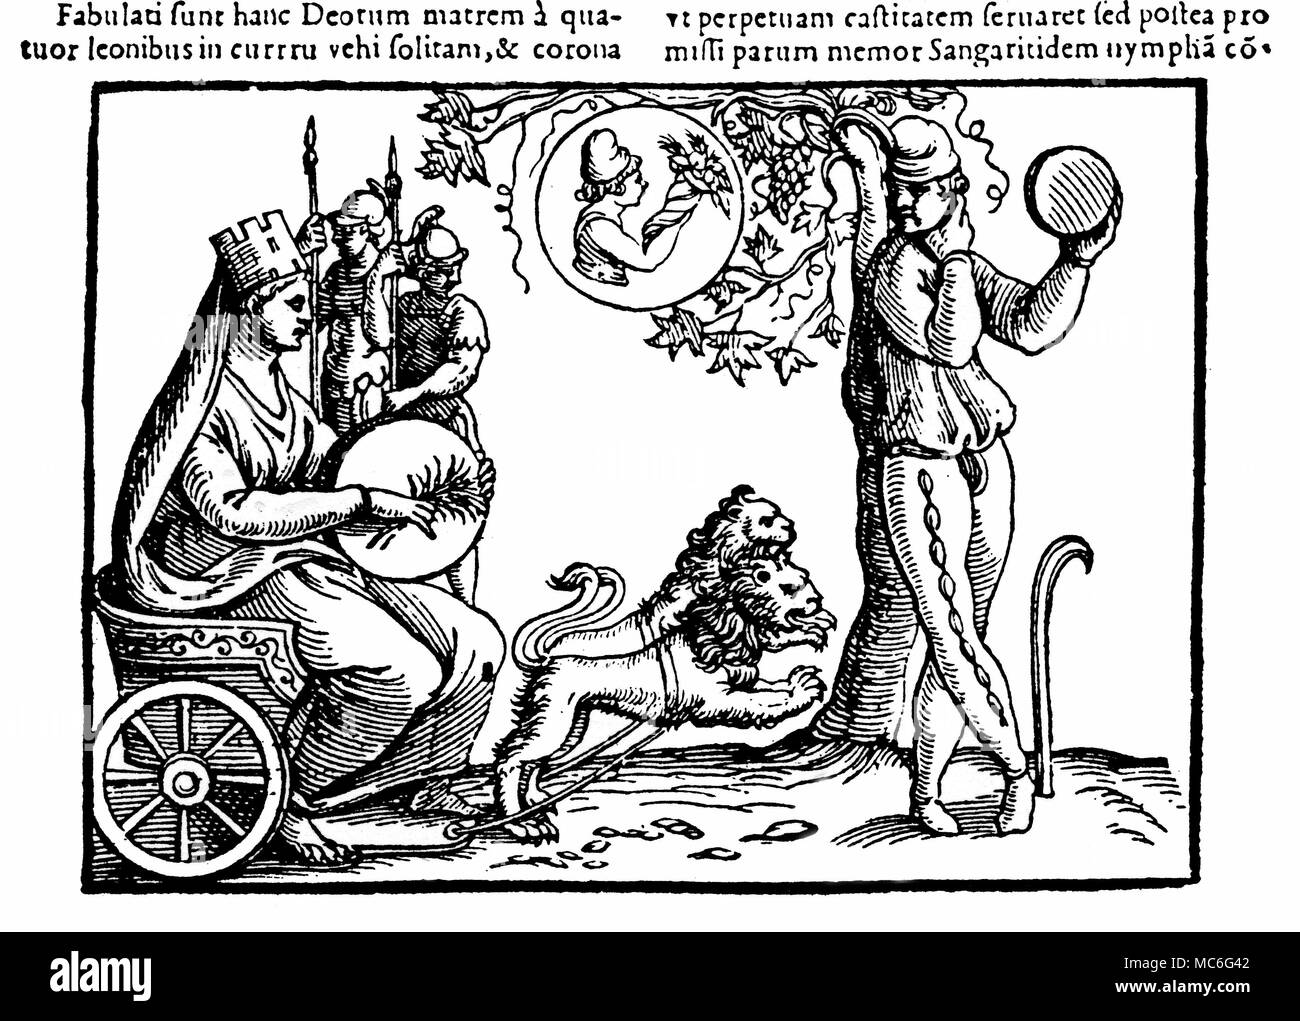 Griechischer Mythologie Rhea, die Mutter der Götter - eine alte Erde - Göttin (buchstäblich, die Erde selbst), die normalerweise in einem Wagen mit vier Löwen (hier durch zwei) gezeichnet und gekrönt mit einem Revolver - wie Krone (als eine Göttin - Gründer der Städte), und das Tragen der Heiligen Tympanon. Die Abbildung auf der rechten Seite ist eine der corybantes oder Priester - die Sichel vielleicht ein Hinweis darauf, dass Er sich selbst kastriert hat. Holzschnitt aus dem 16. Jahrhundert Edition von Natalis Comitis, Mythologiae. Stockfoto